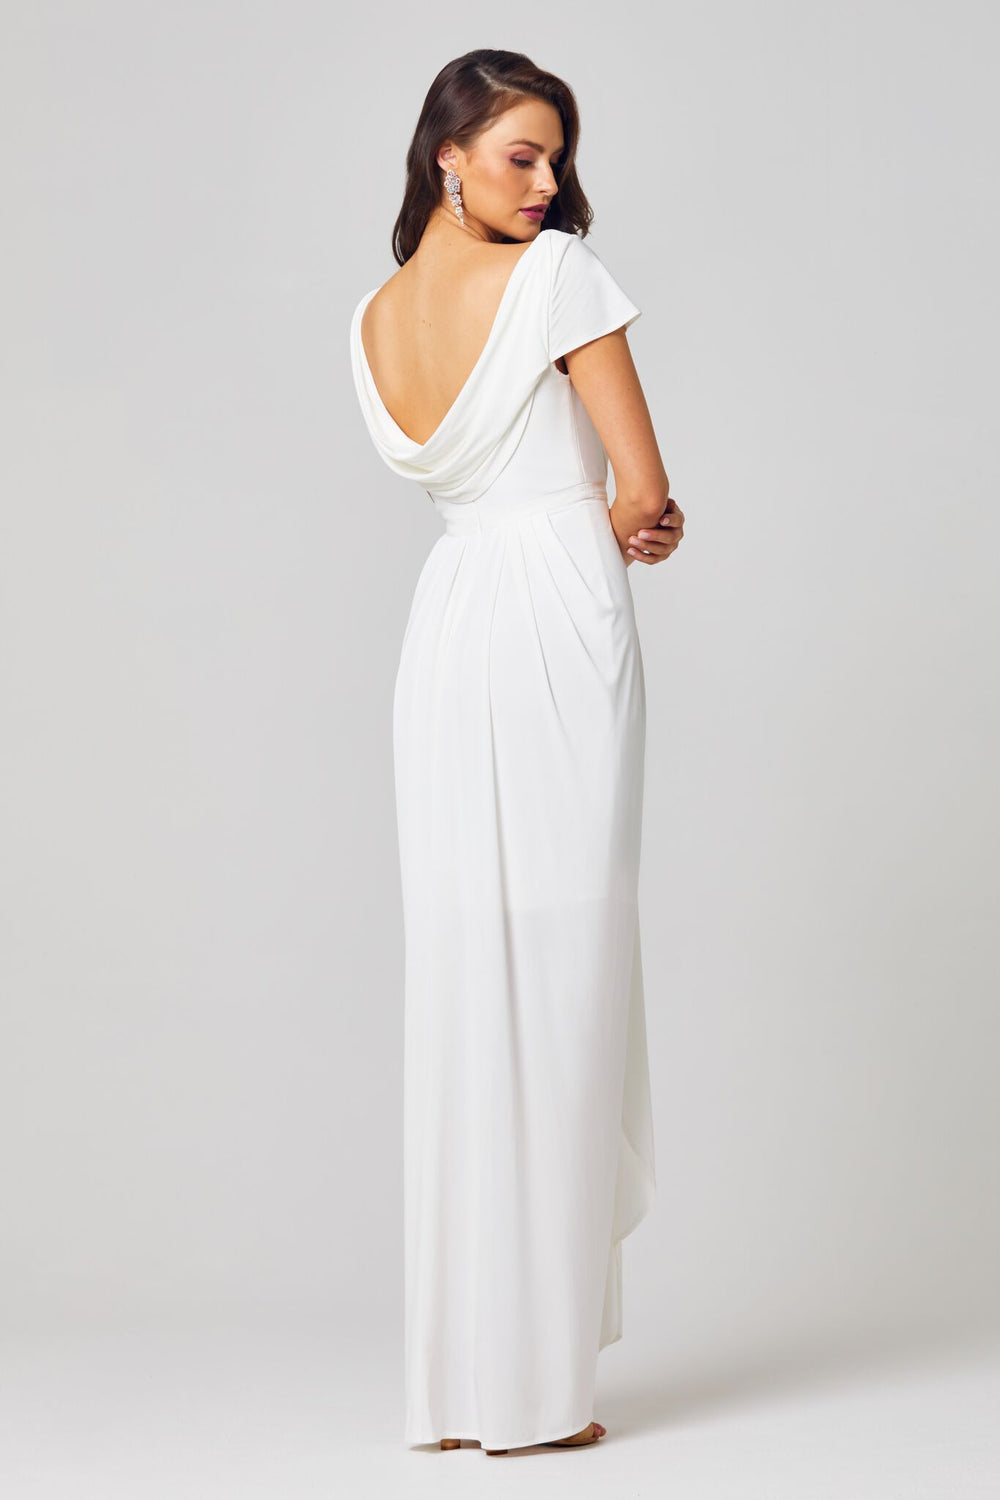 Gloria Dress In Vintage White By Tania Olsen - ElissaJay Boutique